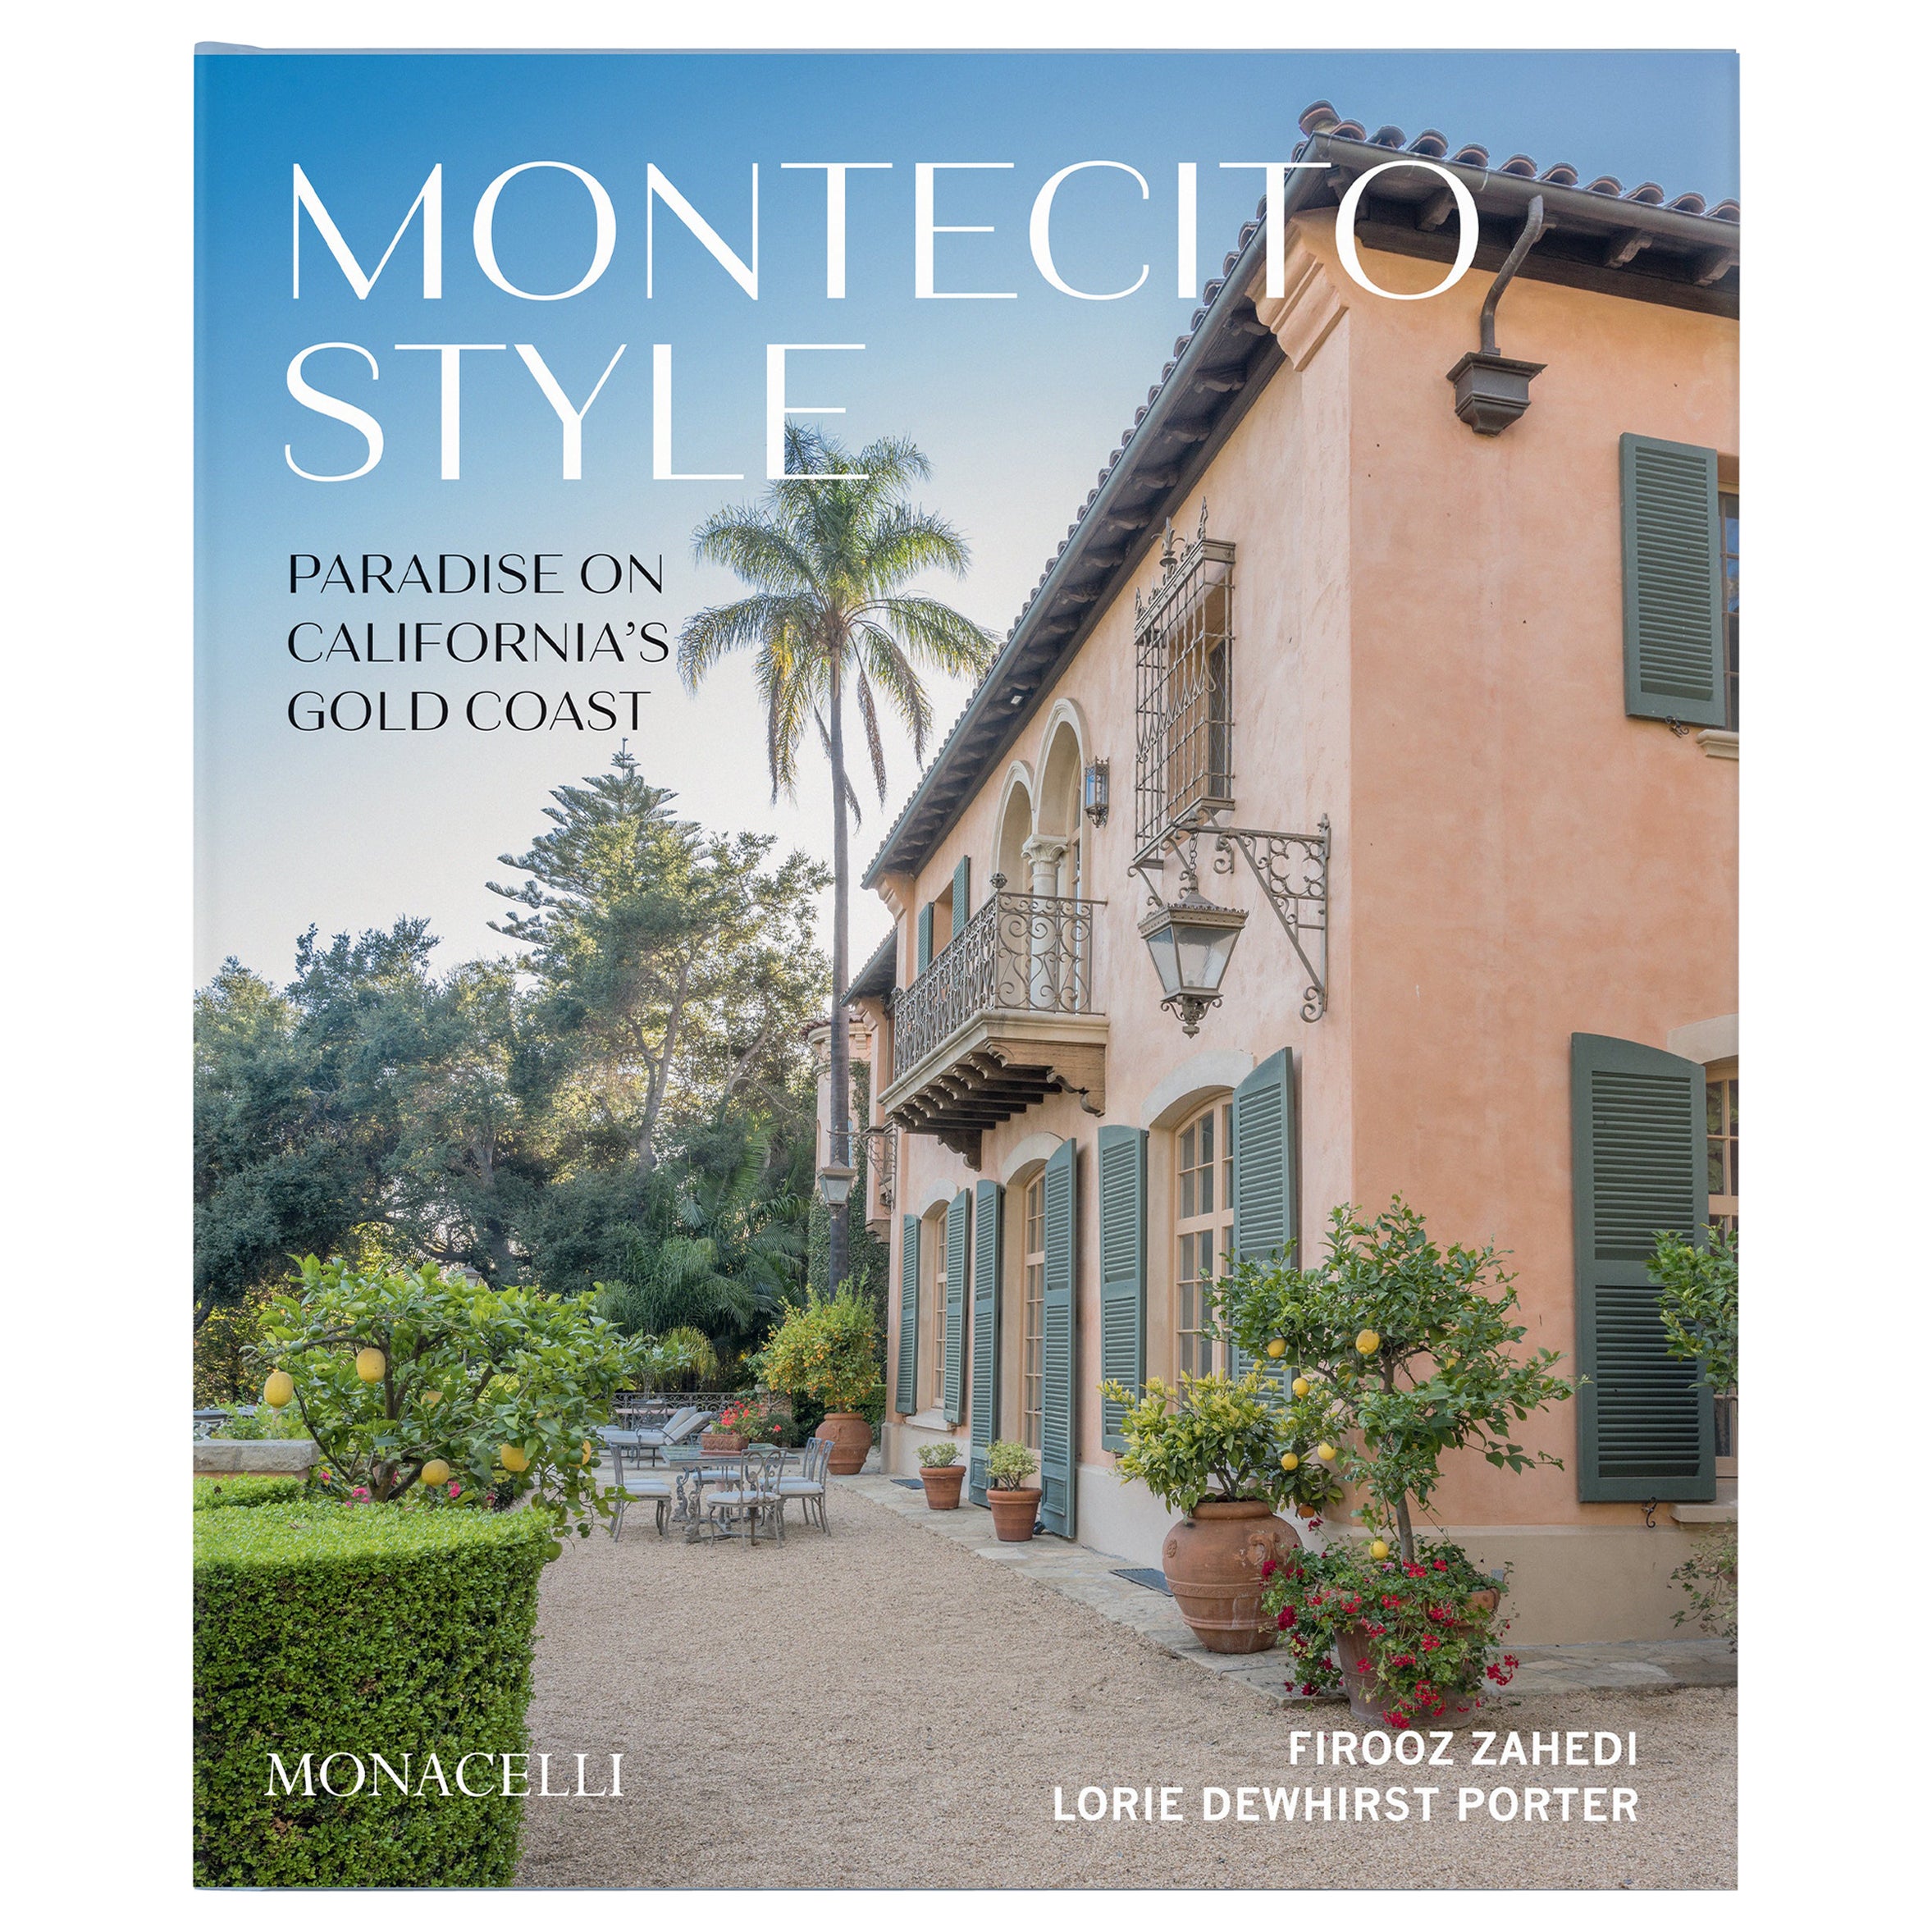 Montecito-Stil: Paradise an der Goldküste Kaliforniens